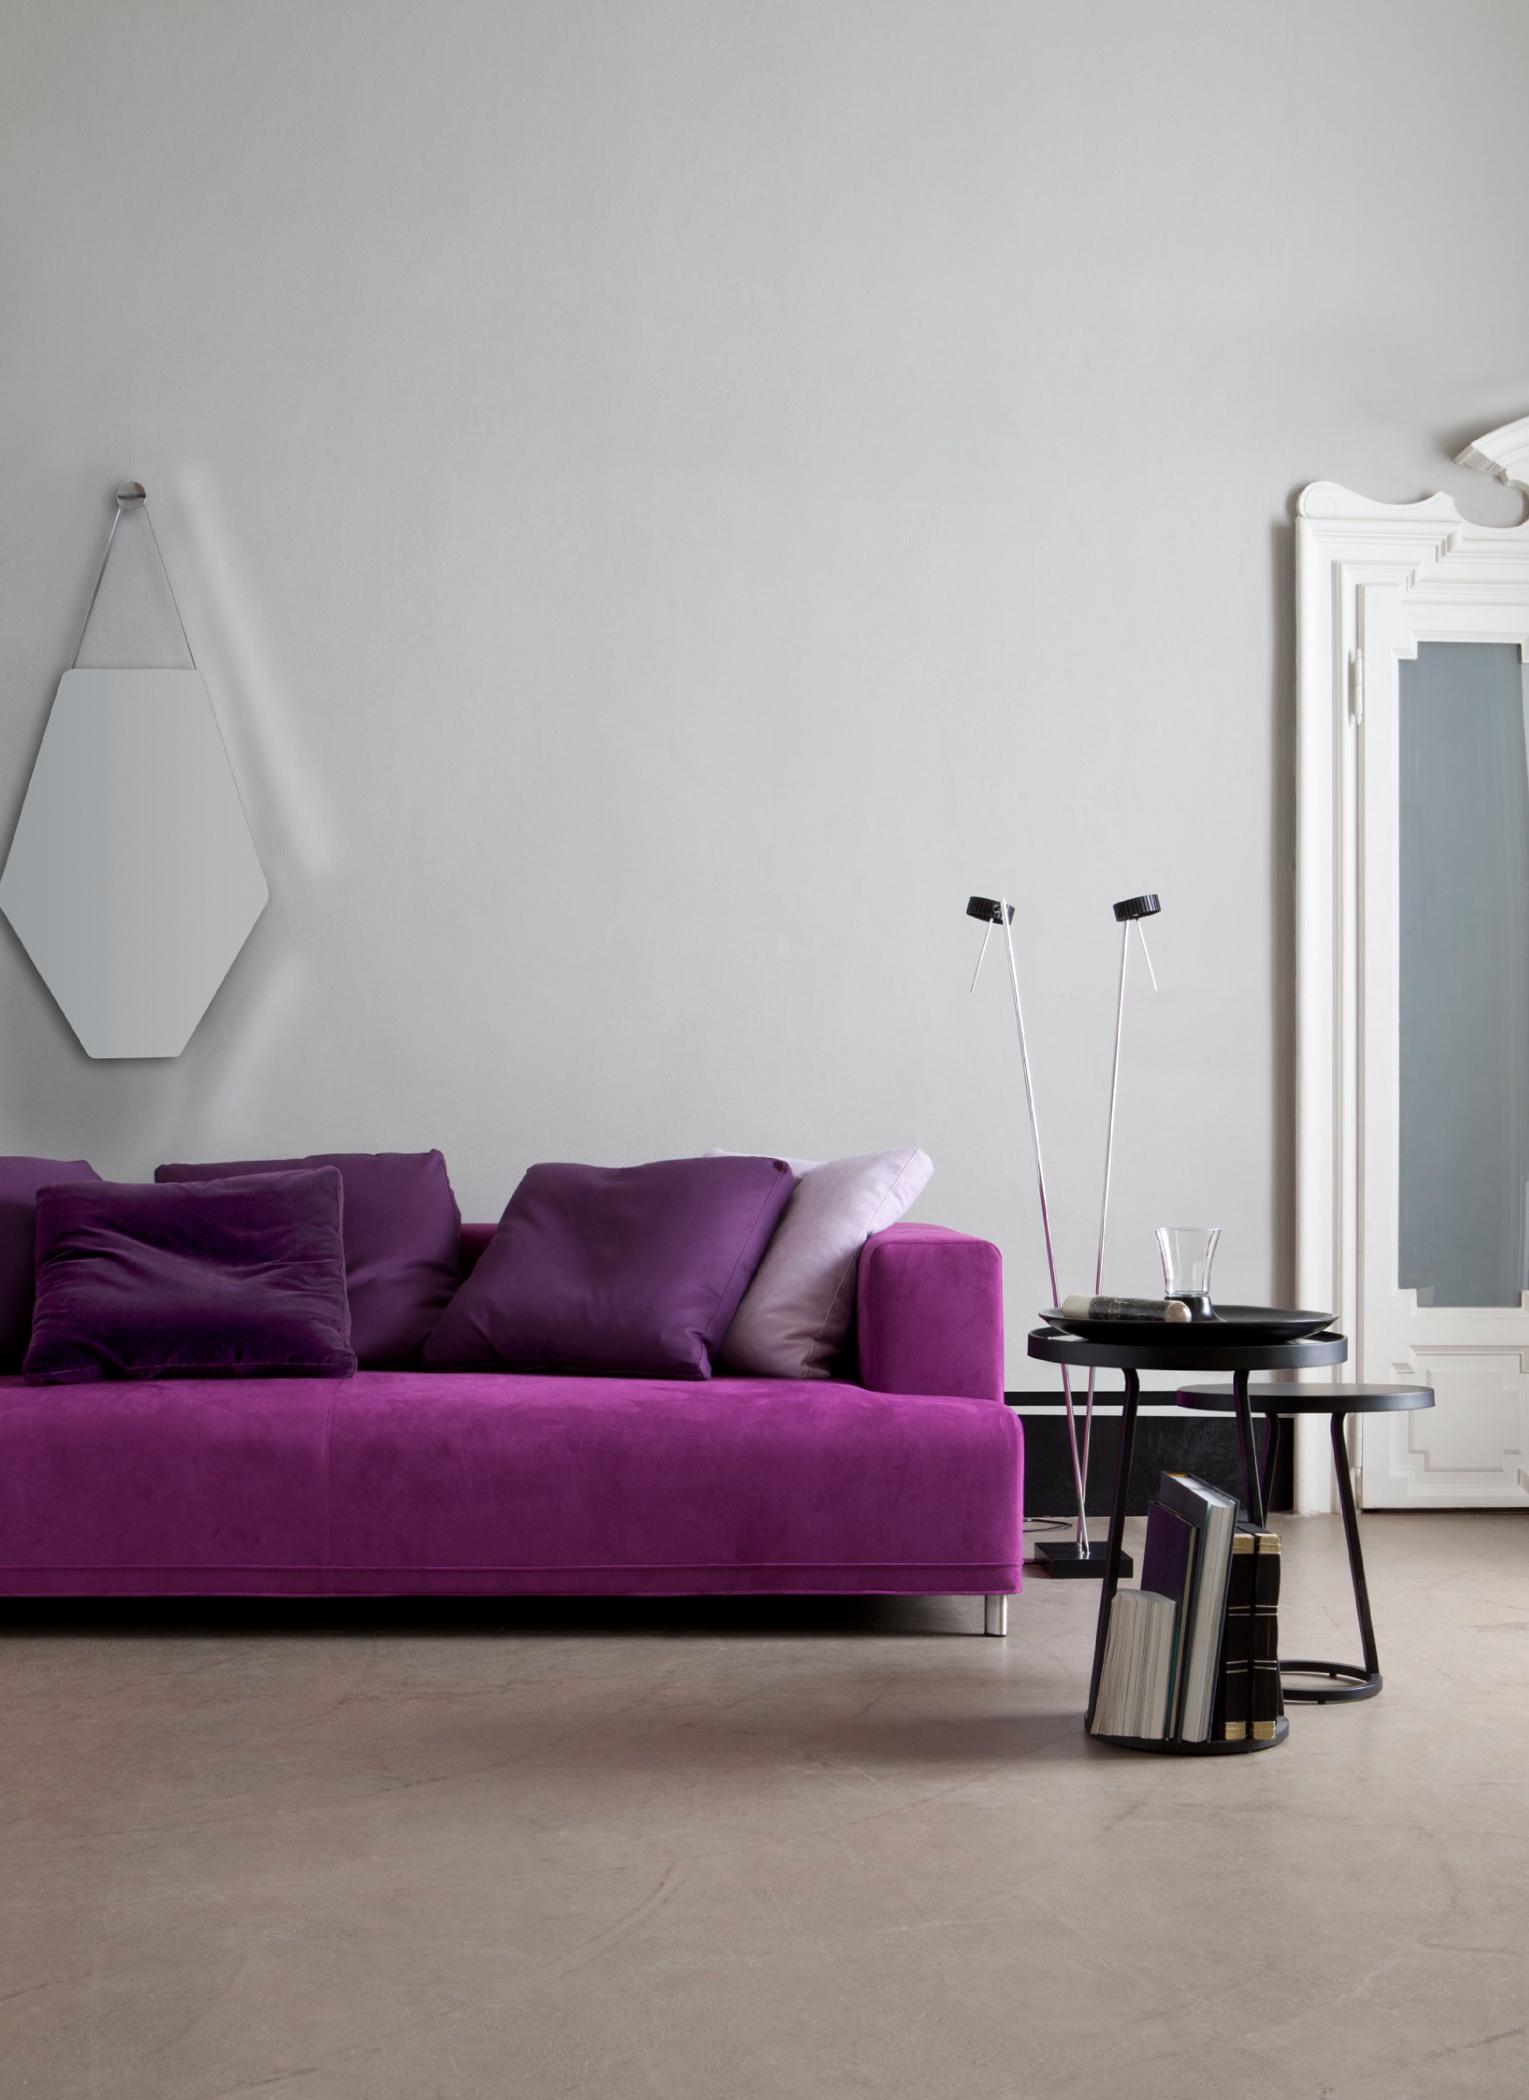 Beistelltisch "Circles" neben Sofa in Violett #wandspiegel ©Ligne Roset